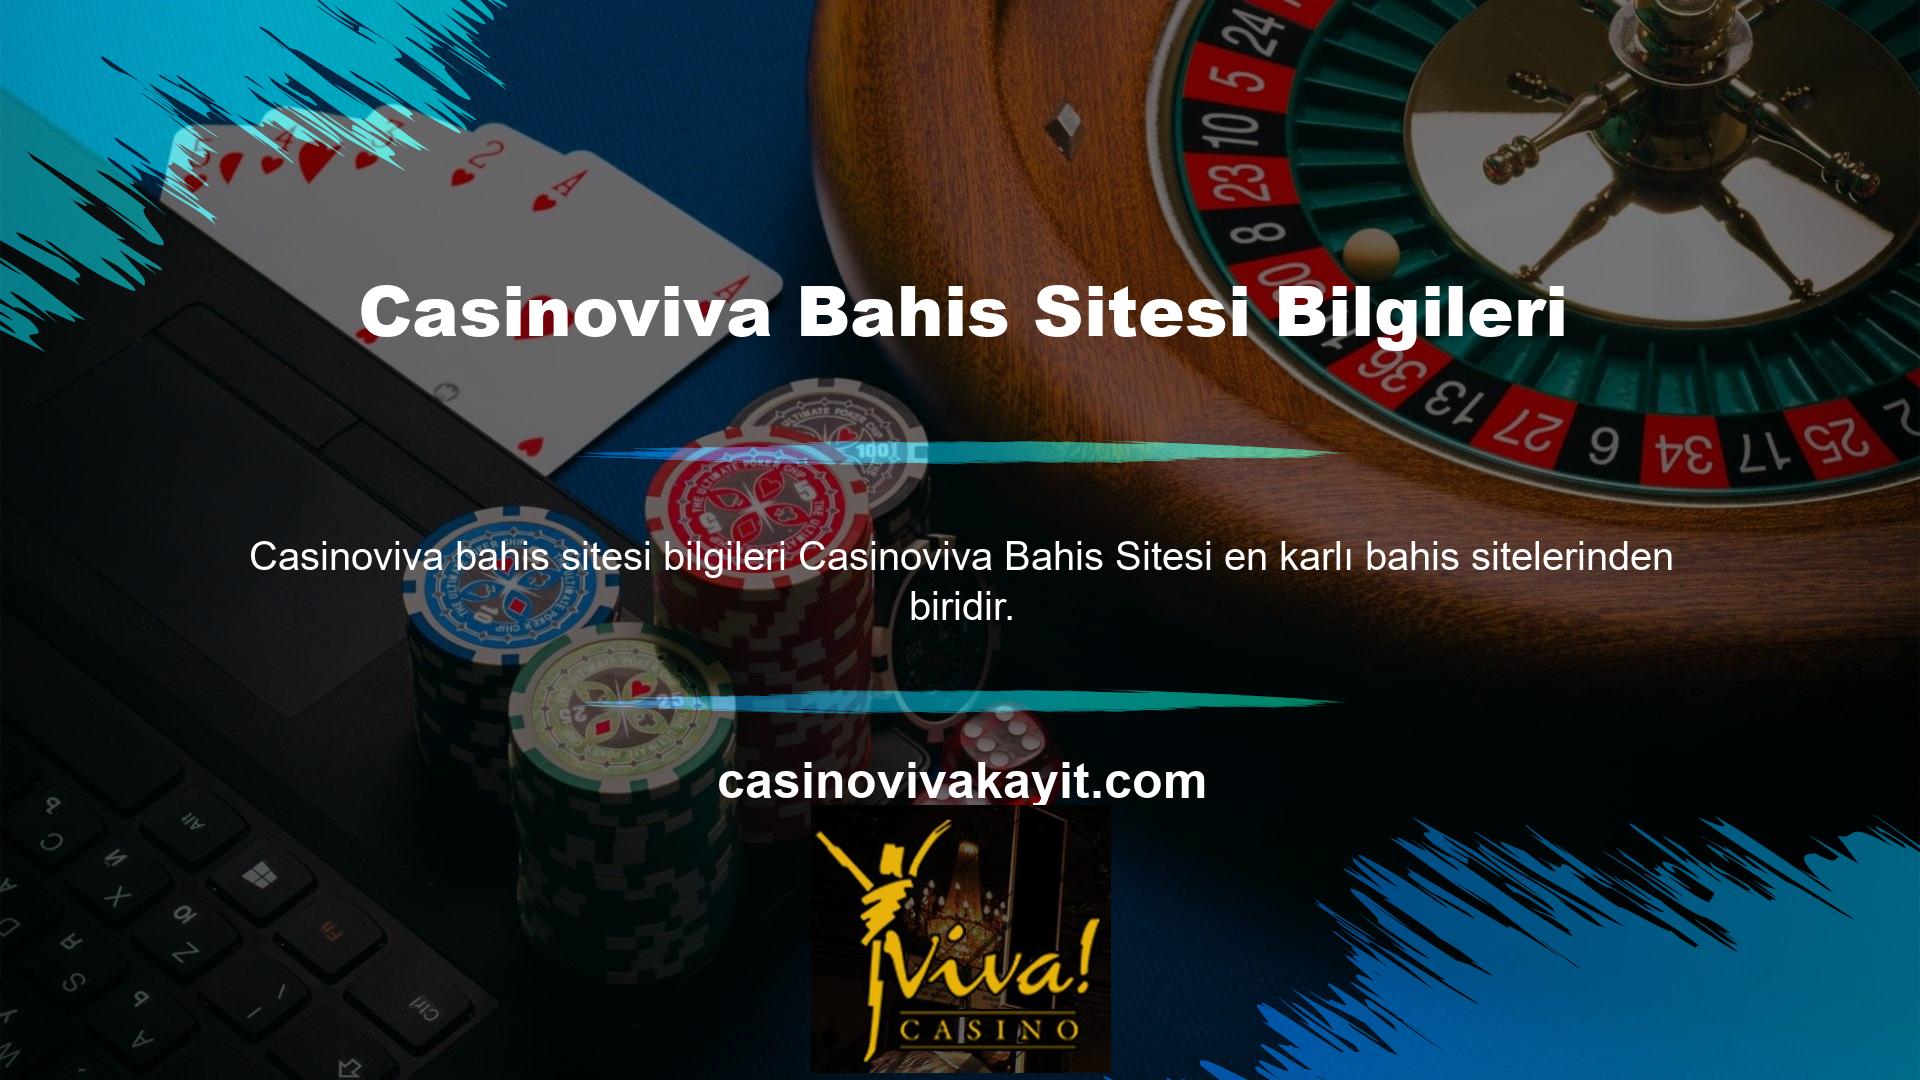 Bu ödüllü siteye üye olmak için Casinoviva Gaming e-postanızı oluşturduktan sonra "Casinoviva Bahis Sitesi Bilgileri, Katılın" ifadesini arayın ve gerekli formu doldurun